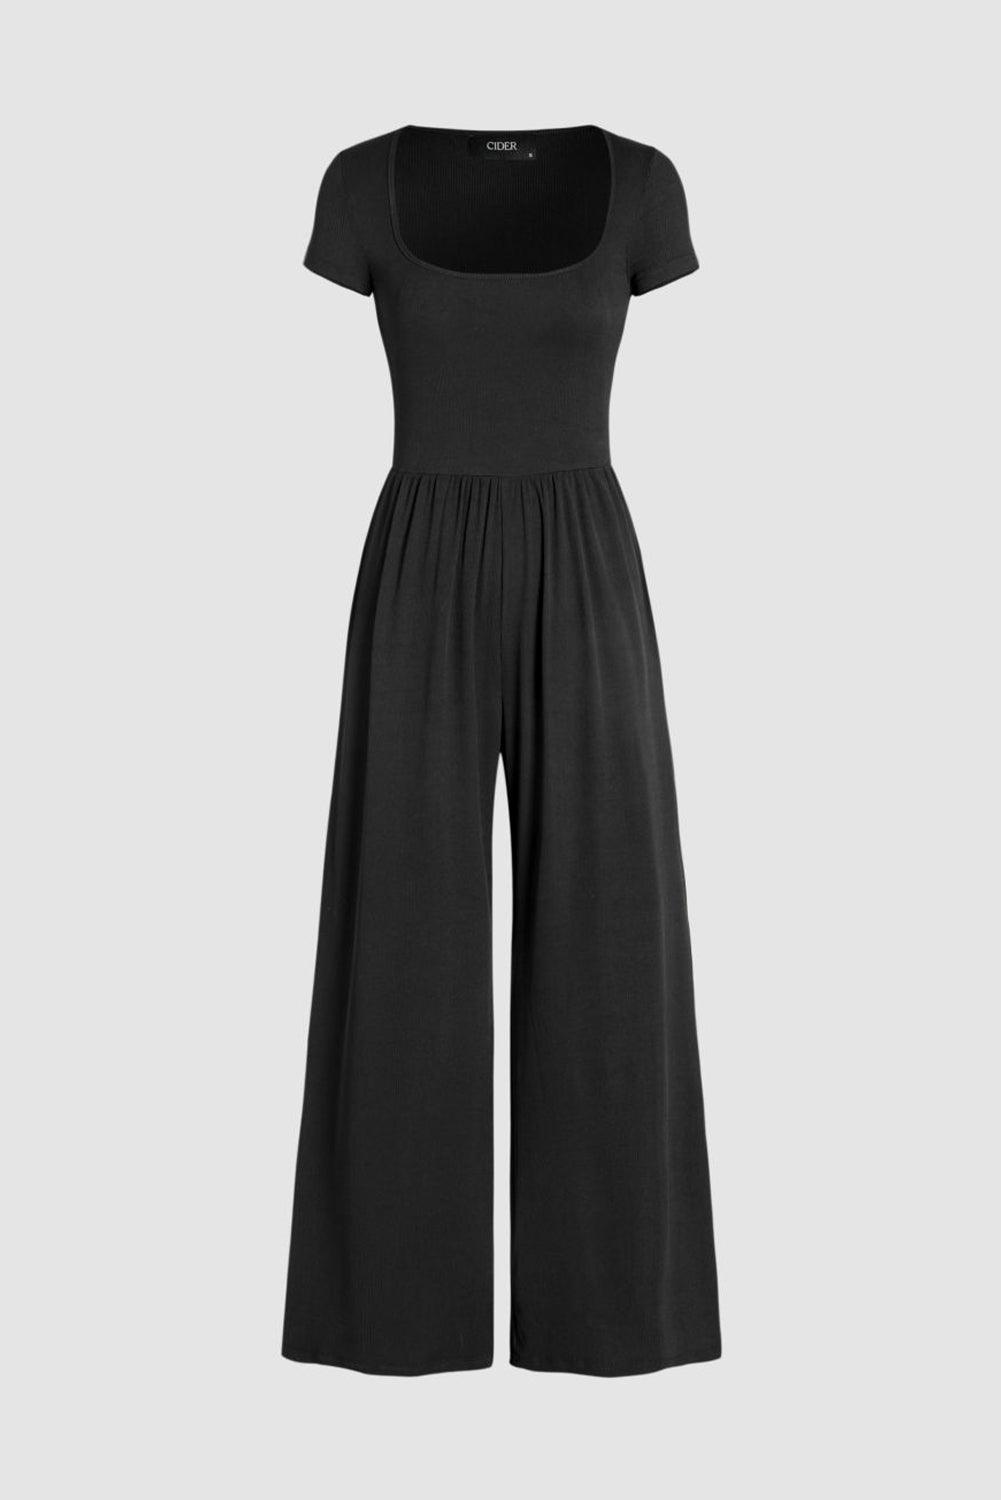 Black Pleated High Waist U Neck Short Sleeve Jumpsuit - L & M Kee, LLC